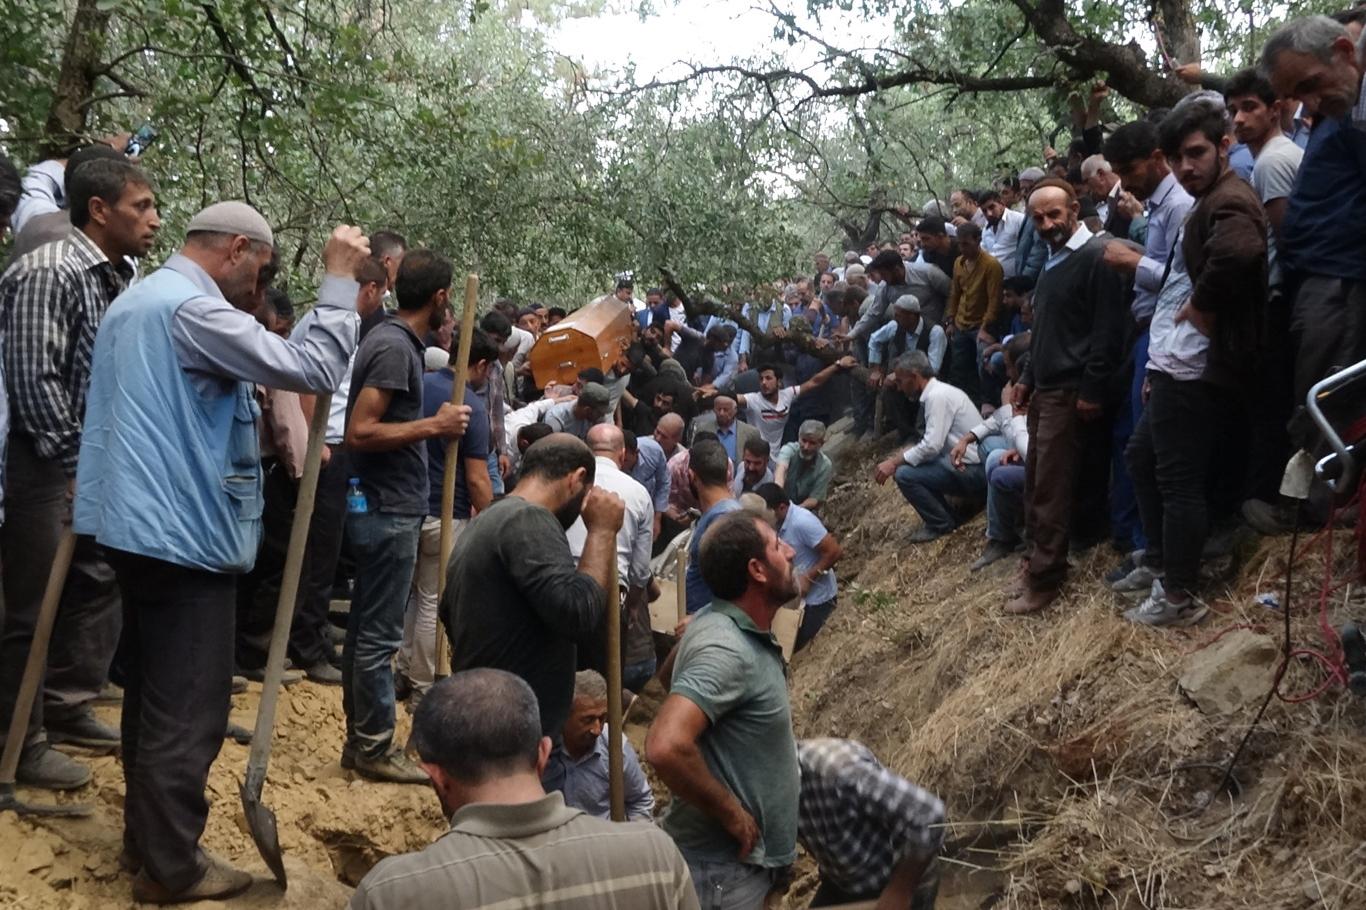 Bitlis'teki kazada hayatını kaybedenler toprağa verildi